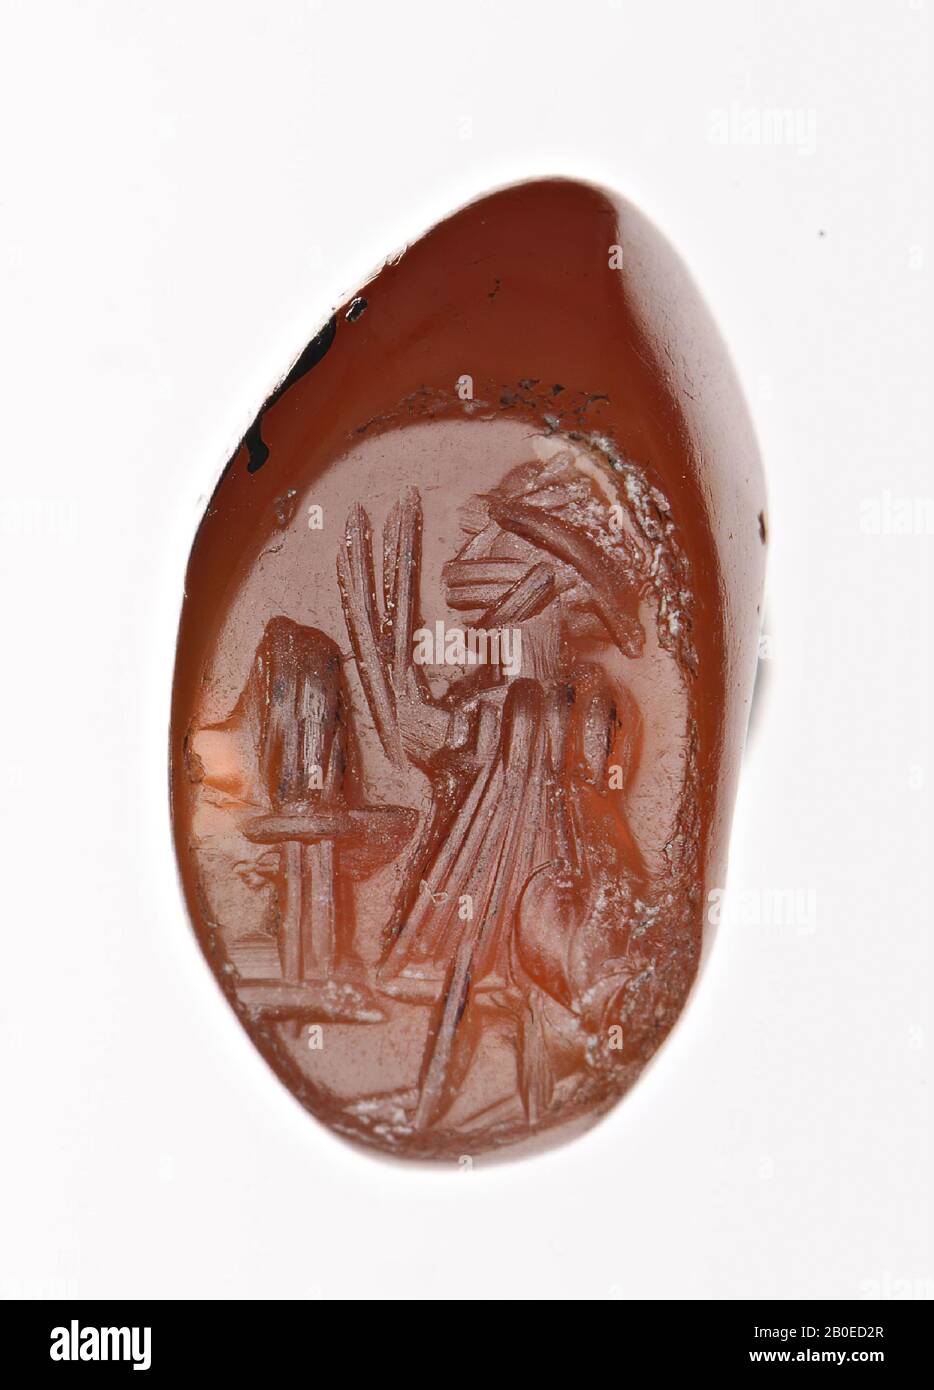 Un francobollo ellittico con immagine di un sacerdote che guarda a sinistra davanti ad un altare del fuoco, Sigillo, pietra, carnelio, H 0,7 cm, D 1,3 cm, Iran Foto Stock